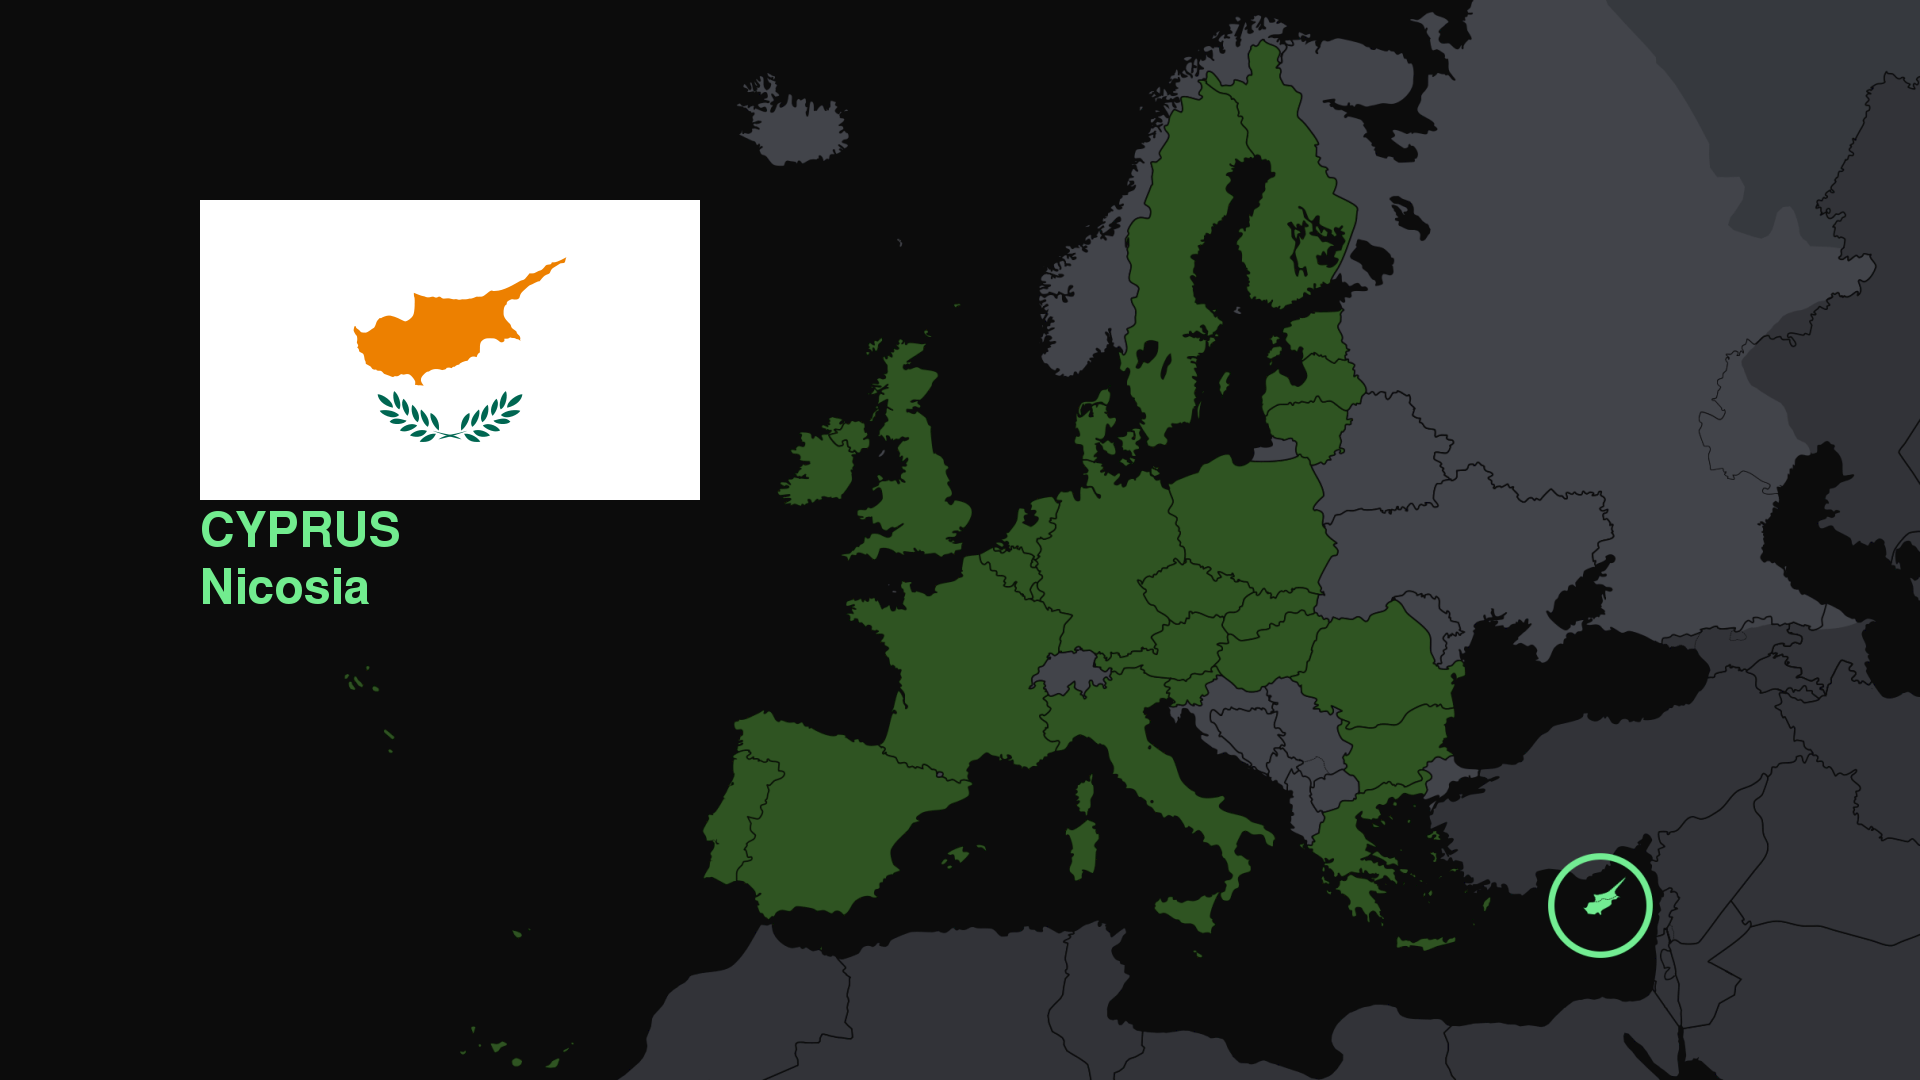 Тест на знание карты Европы. Карта Европы с флагами. Тест на знание стран Европы. Карта Европы в зеленом цвете.